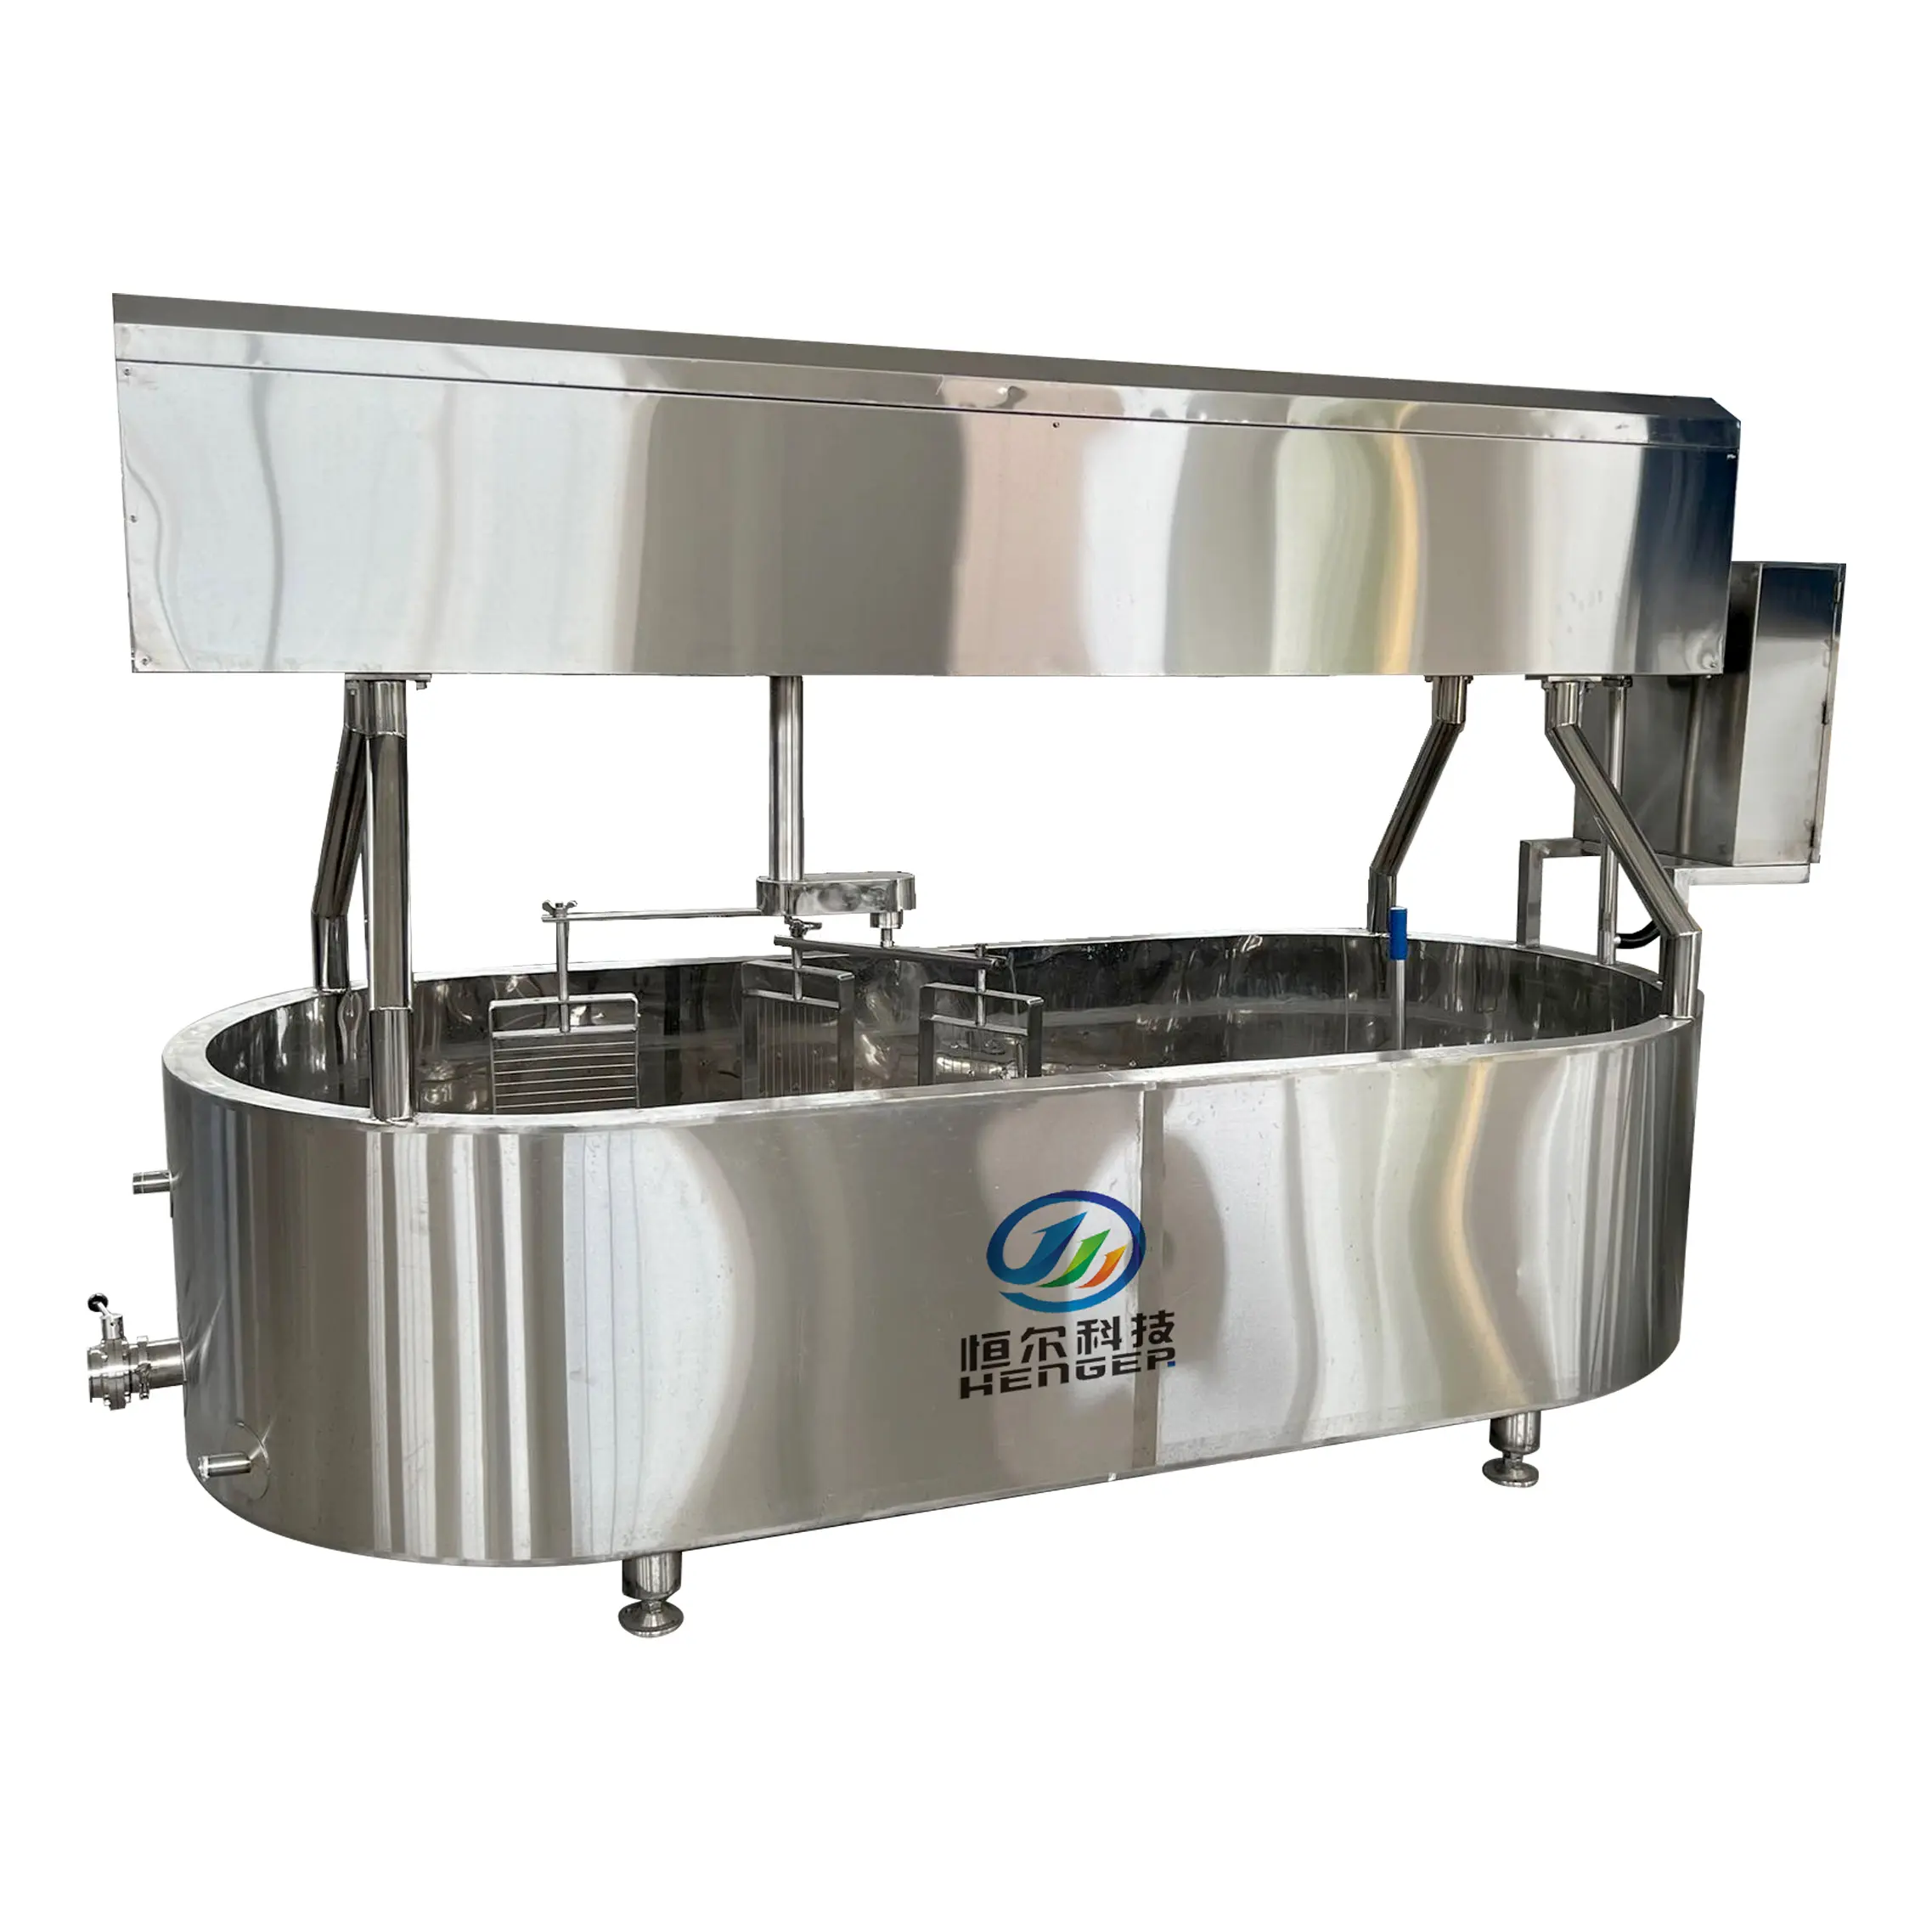 Hoge Kwaliteit Food Grade 200-1000l Elektrische Kaas Maken Vat Kaas Verwerking Vat Kaas Productie-Apparatuur